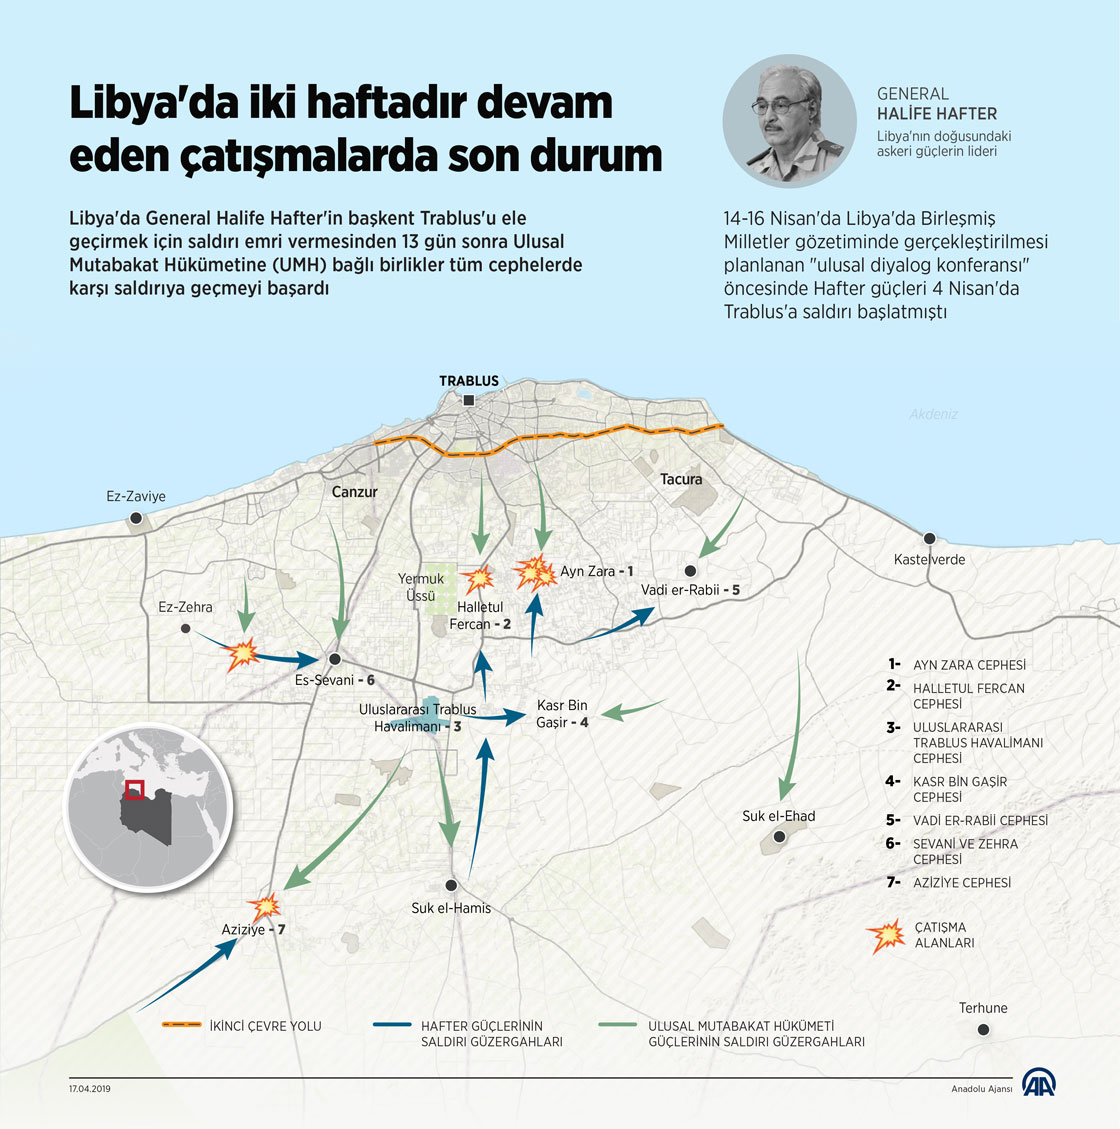 Libya'da iki haftadır devam eden çatışmalarda son durum